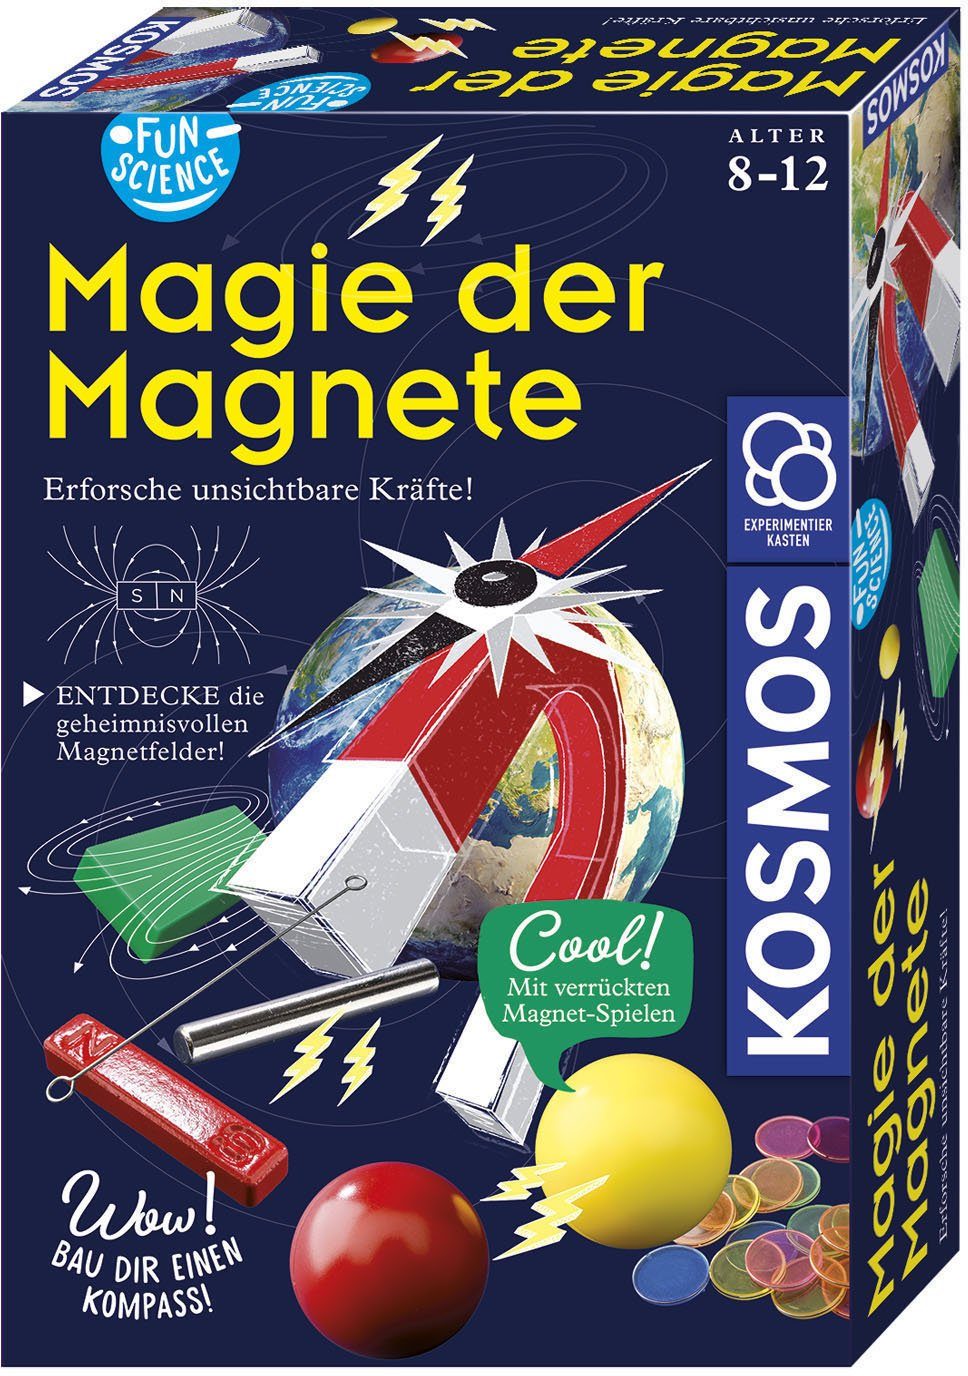 Kosmos Experimentierkasten Fun Science Magie Magnete der